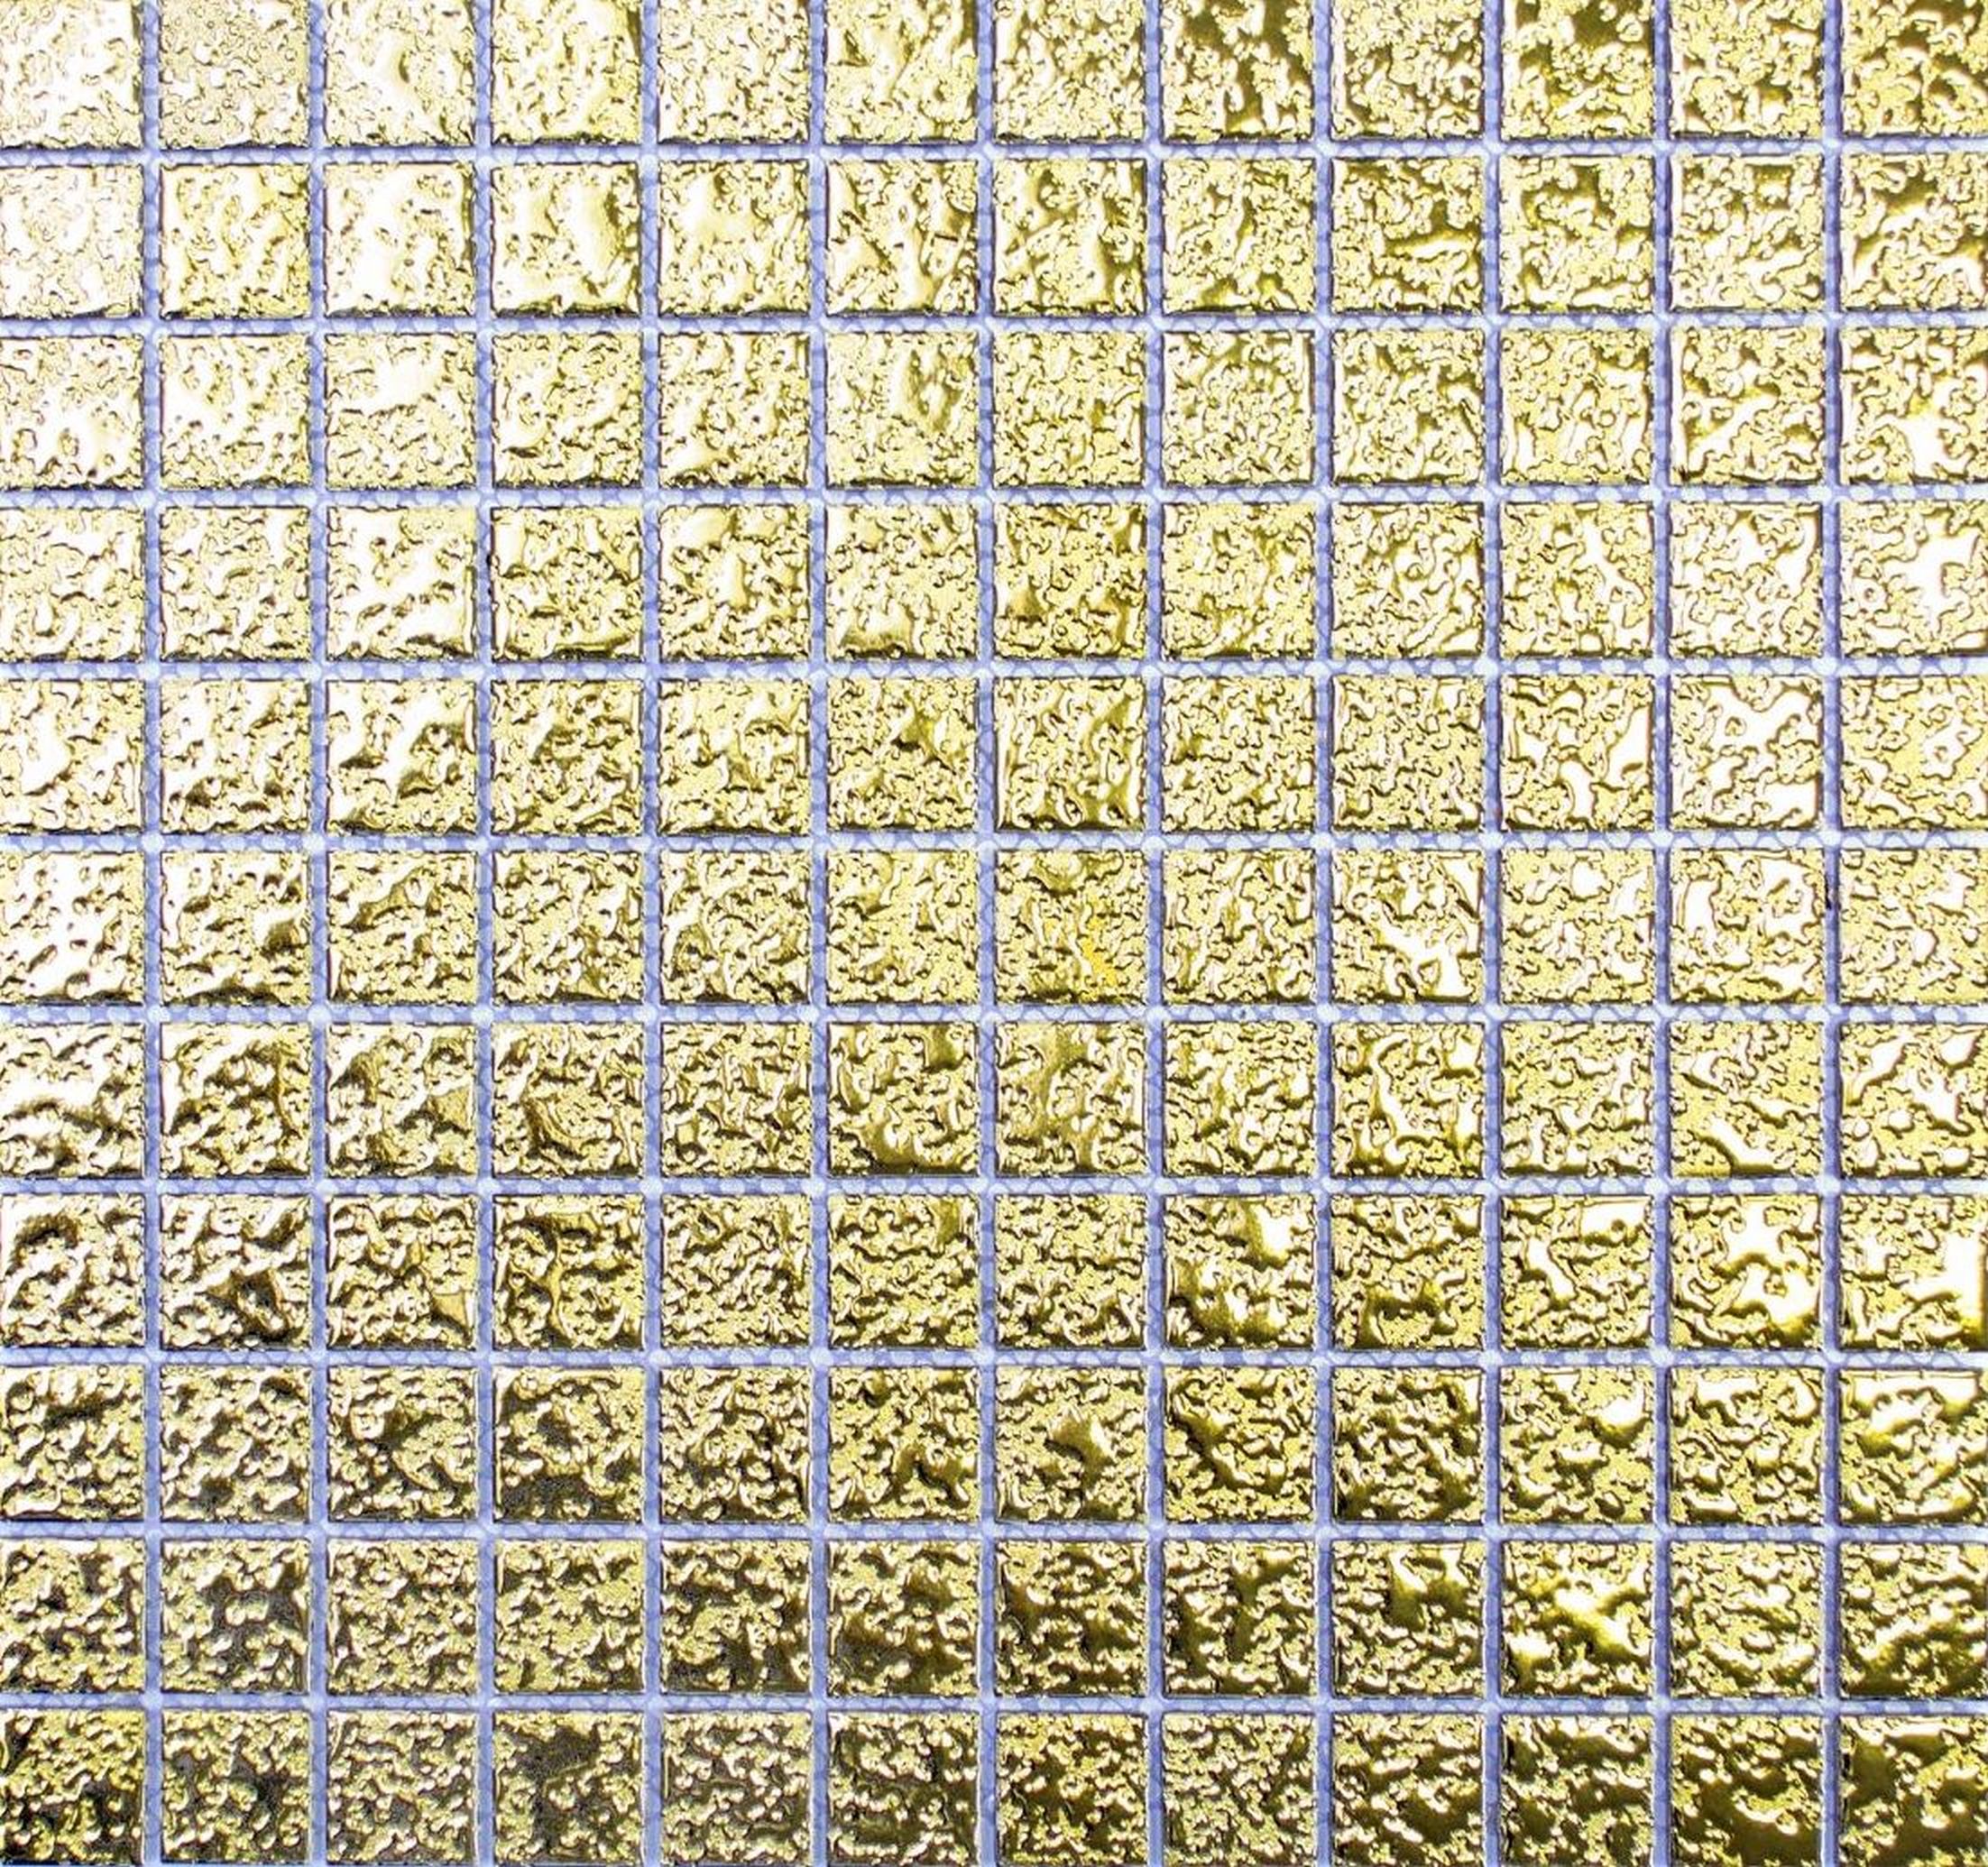 Ceramic mosaic gold mosaic tile textured wall tile backsplash kitchen tile backsplash kitchen shower wall MOS18-0707